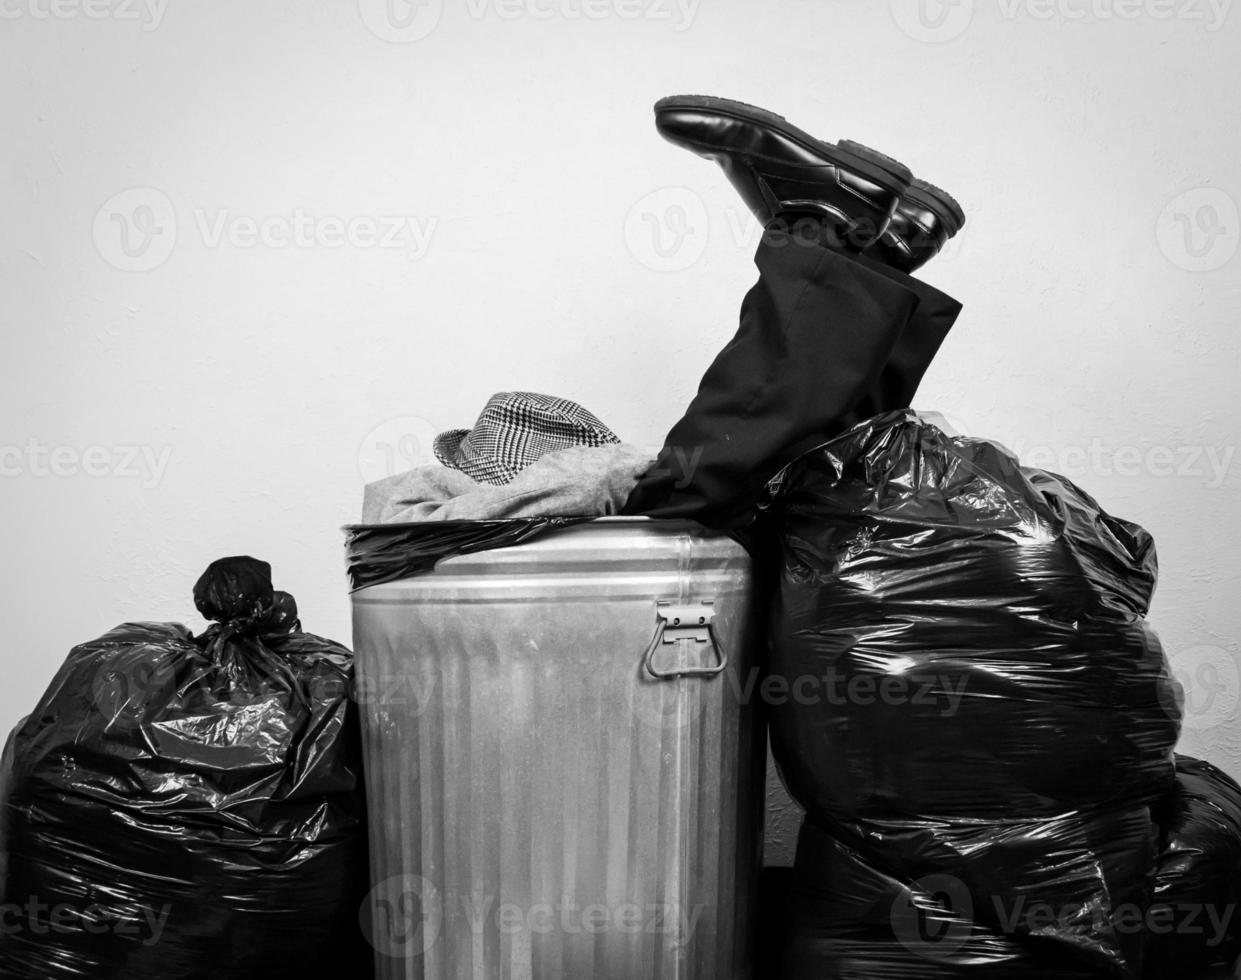 retrato en blanco y negro de un hombre de negocios con traje sentado en un bote de basura de metal rodeado de bolsas de basura. concepto de hombre golpeado por el capitalismo y la vida. foto